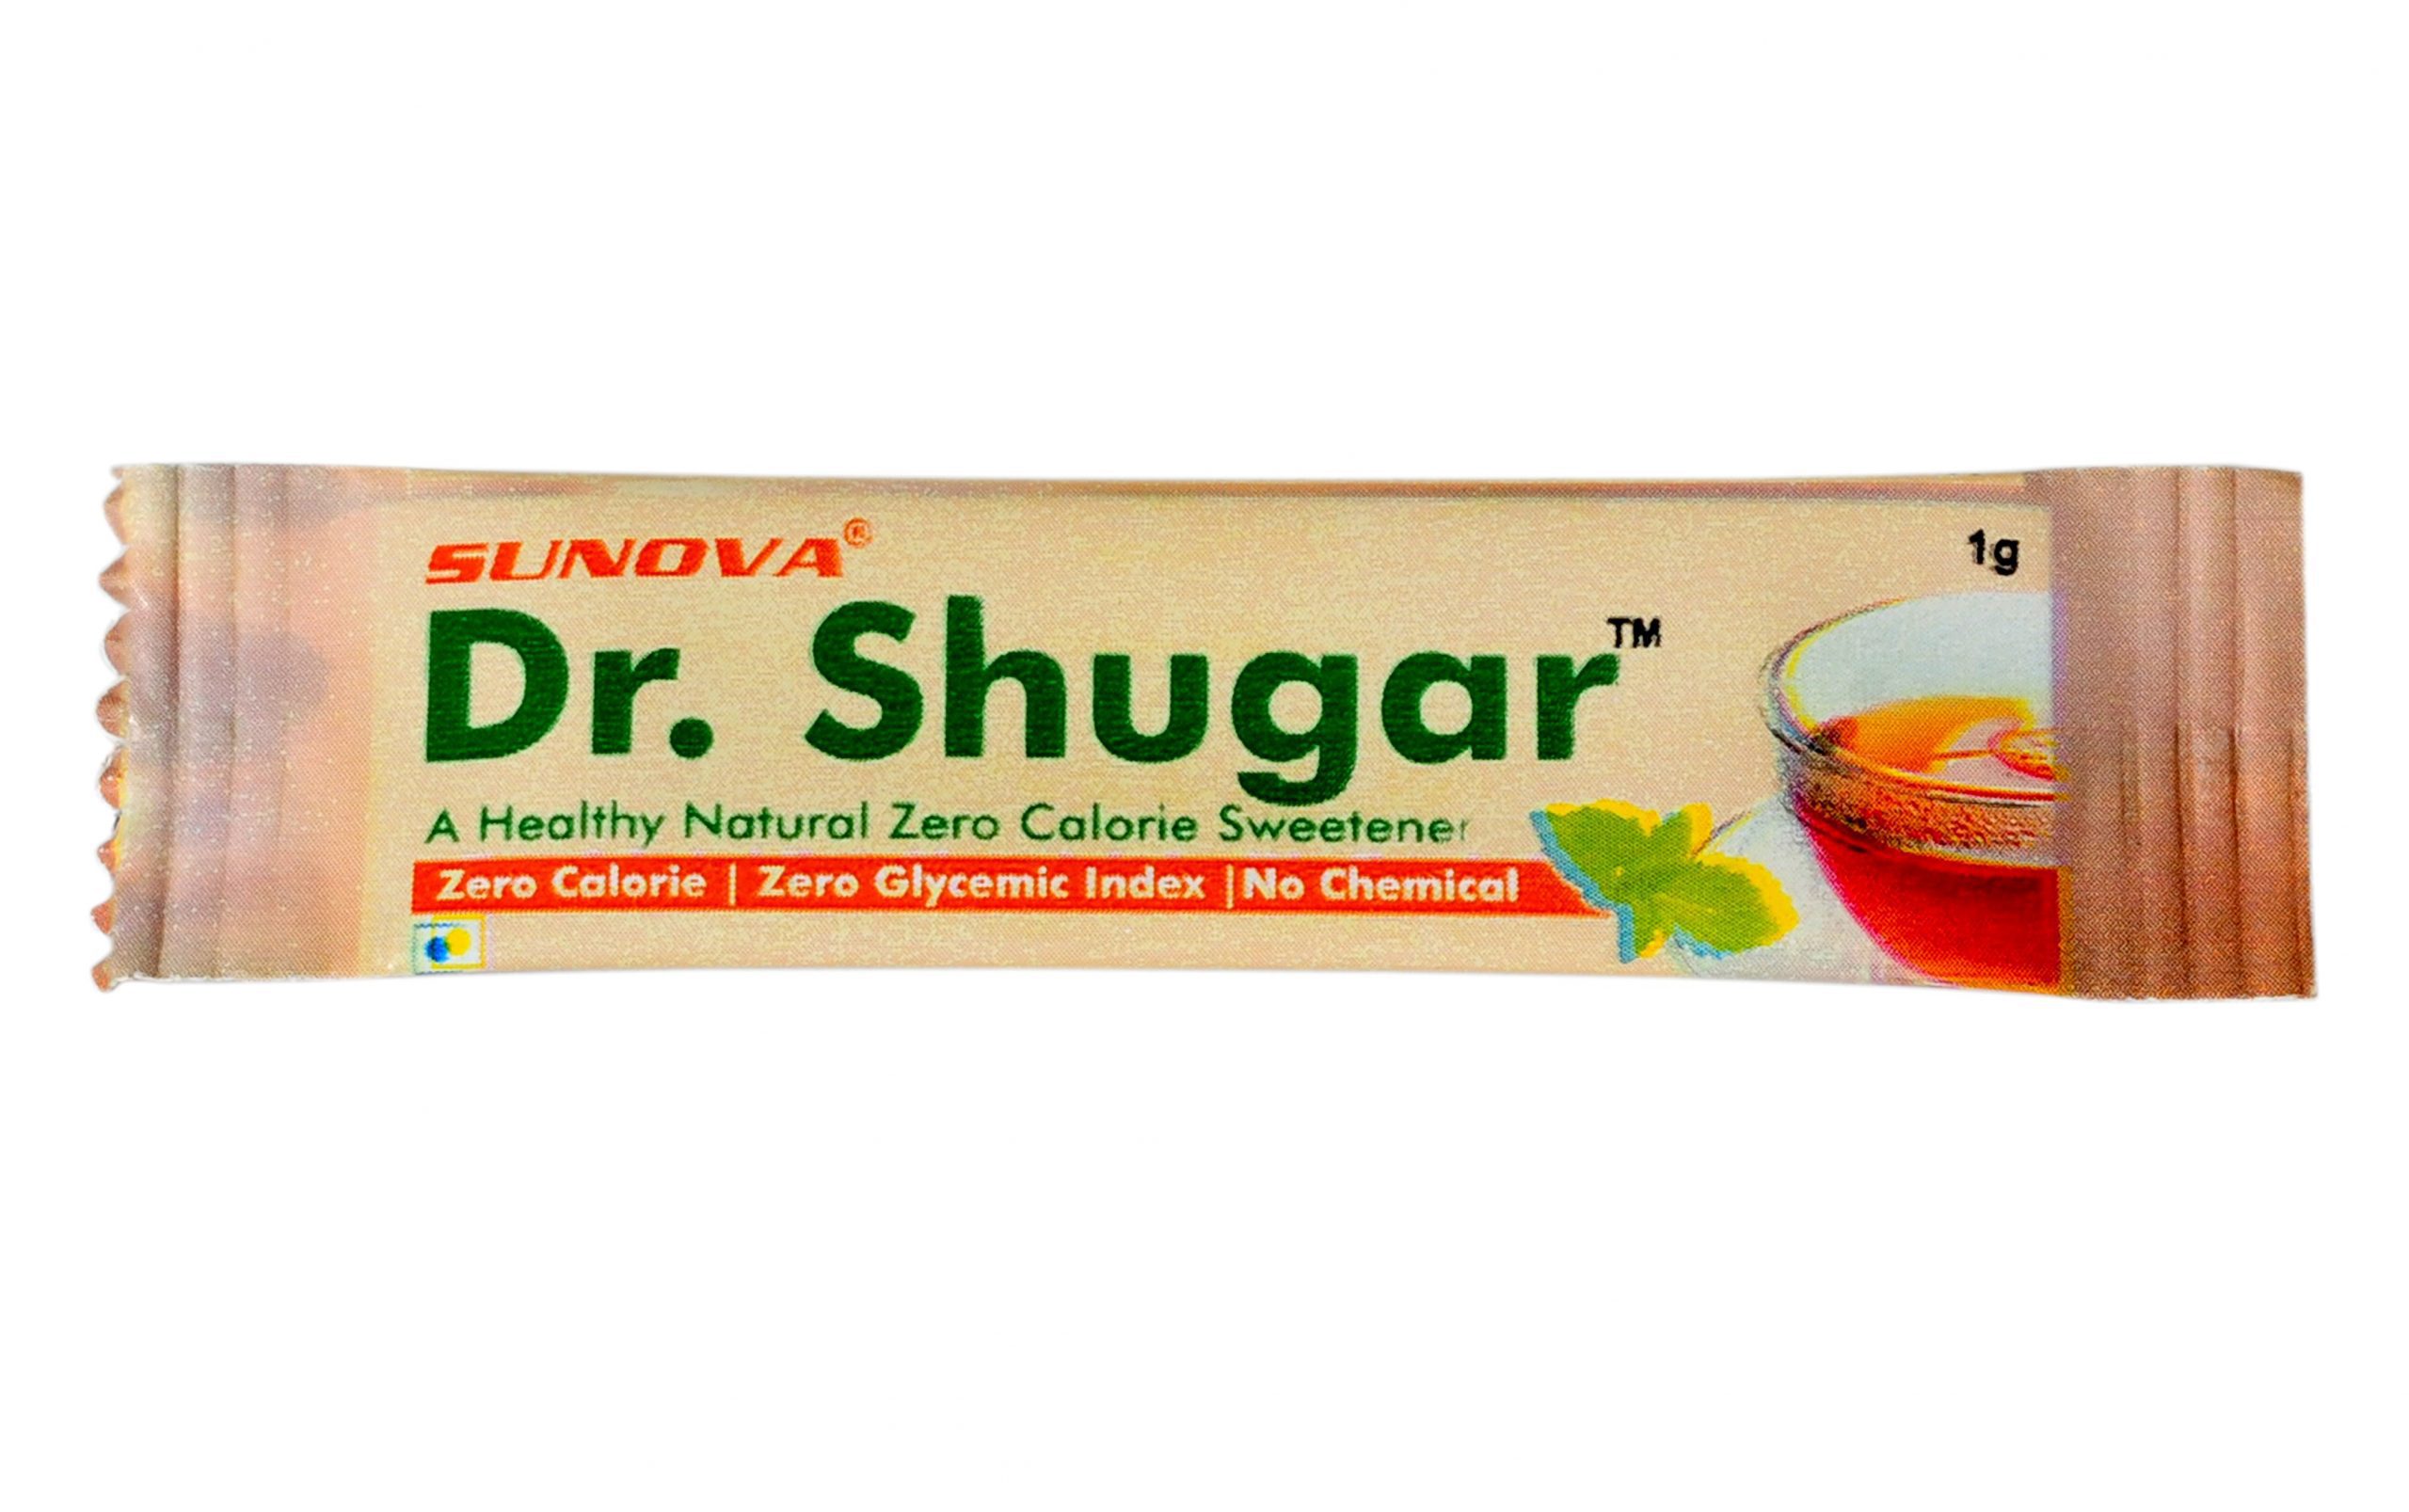 Sunova-Dr shugar-